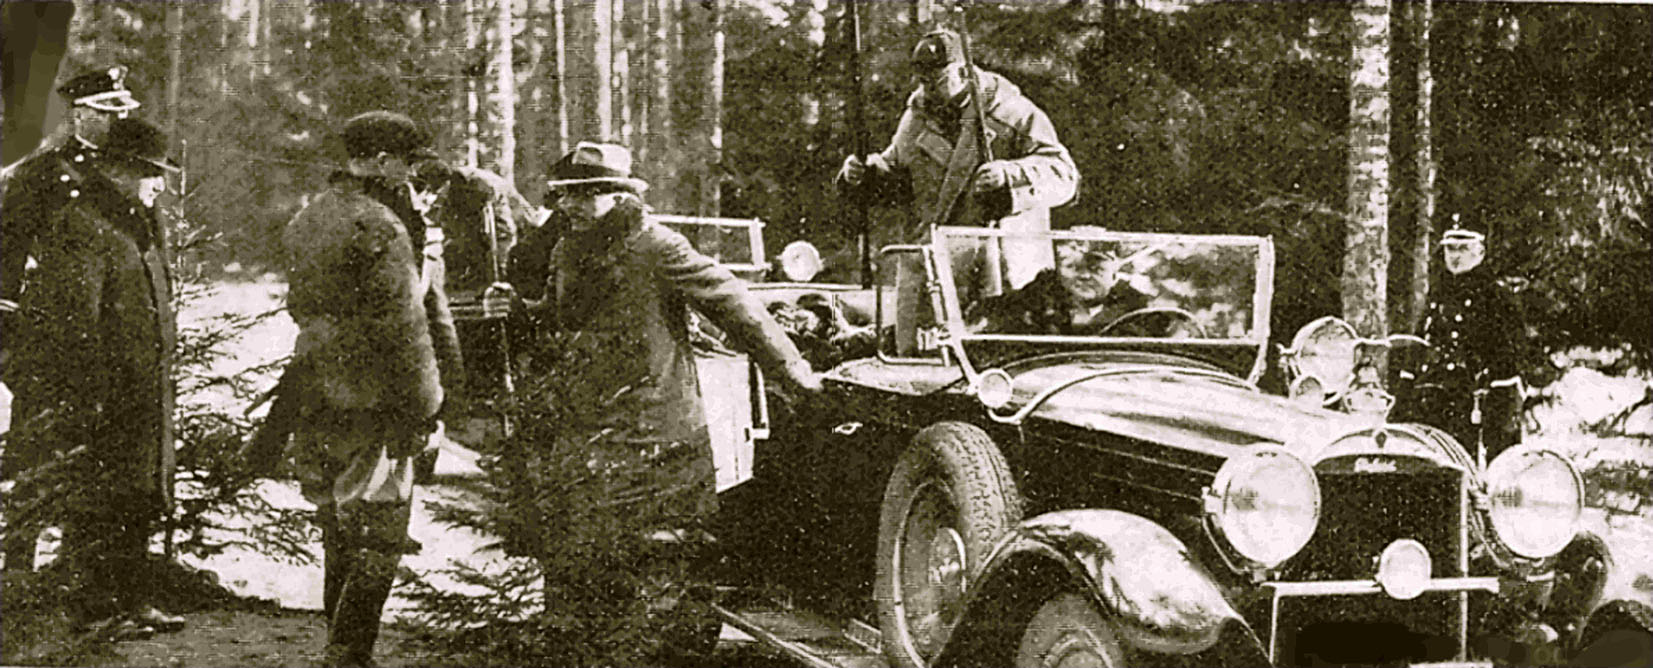 Prezydent Mościcki przyjechał do Puszczy. Źródło: „Tygodnik Ilustrowany” (Nr z 25.01.1930)